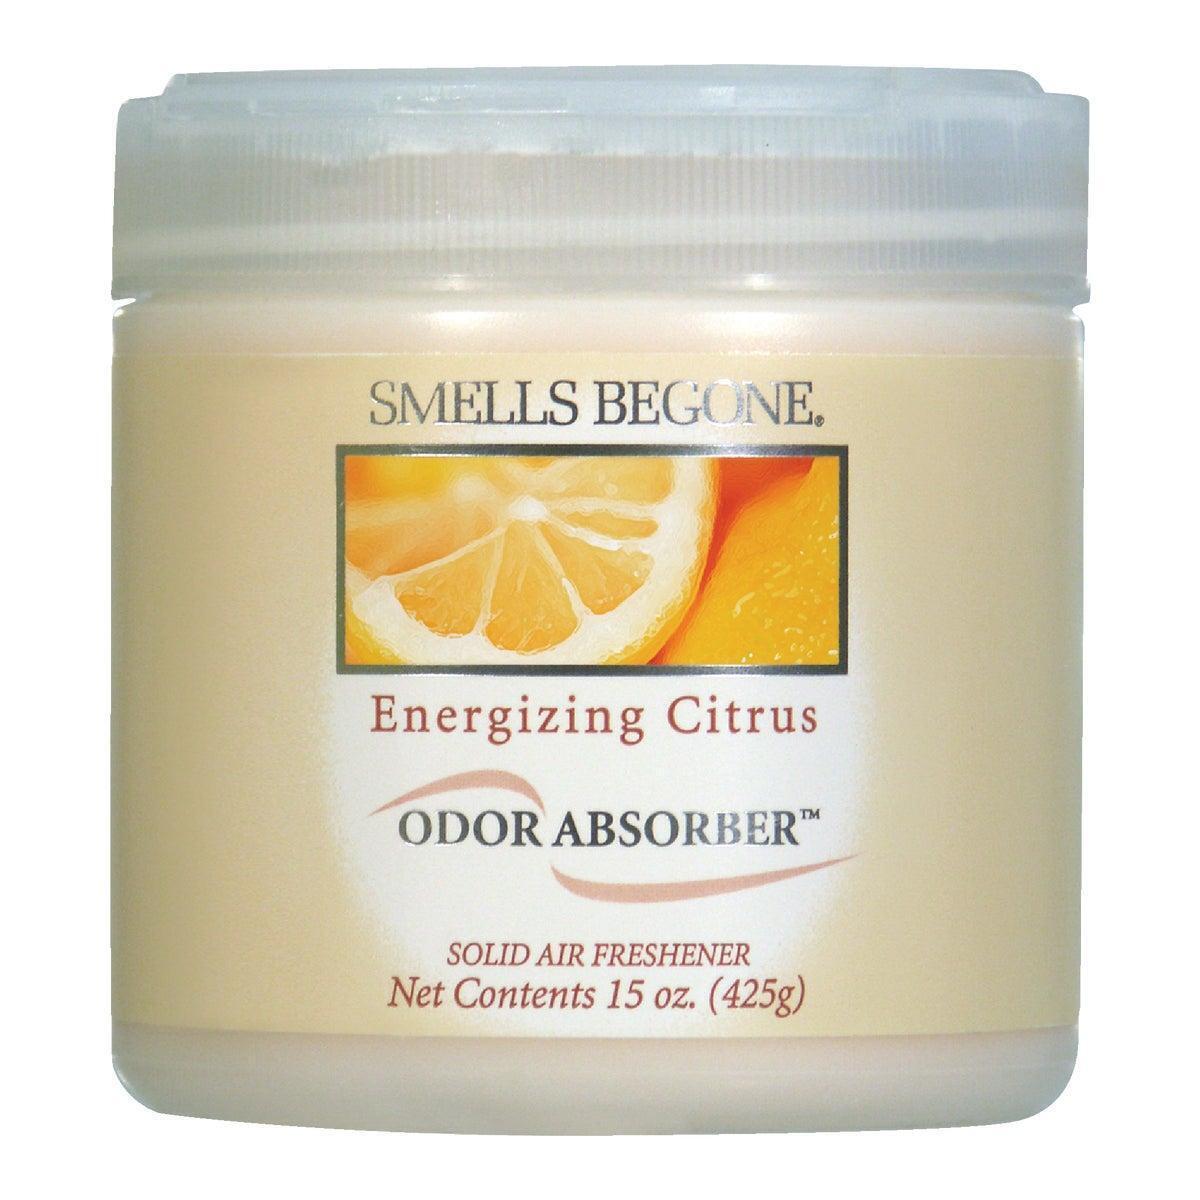 Smells Begone 15 Oz. Energizing Citrus Solid Air Freshener 50316